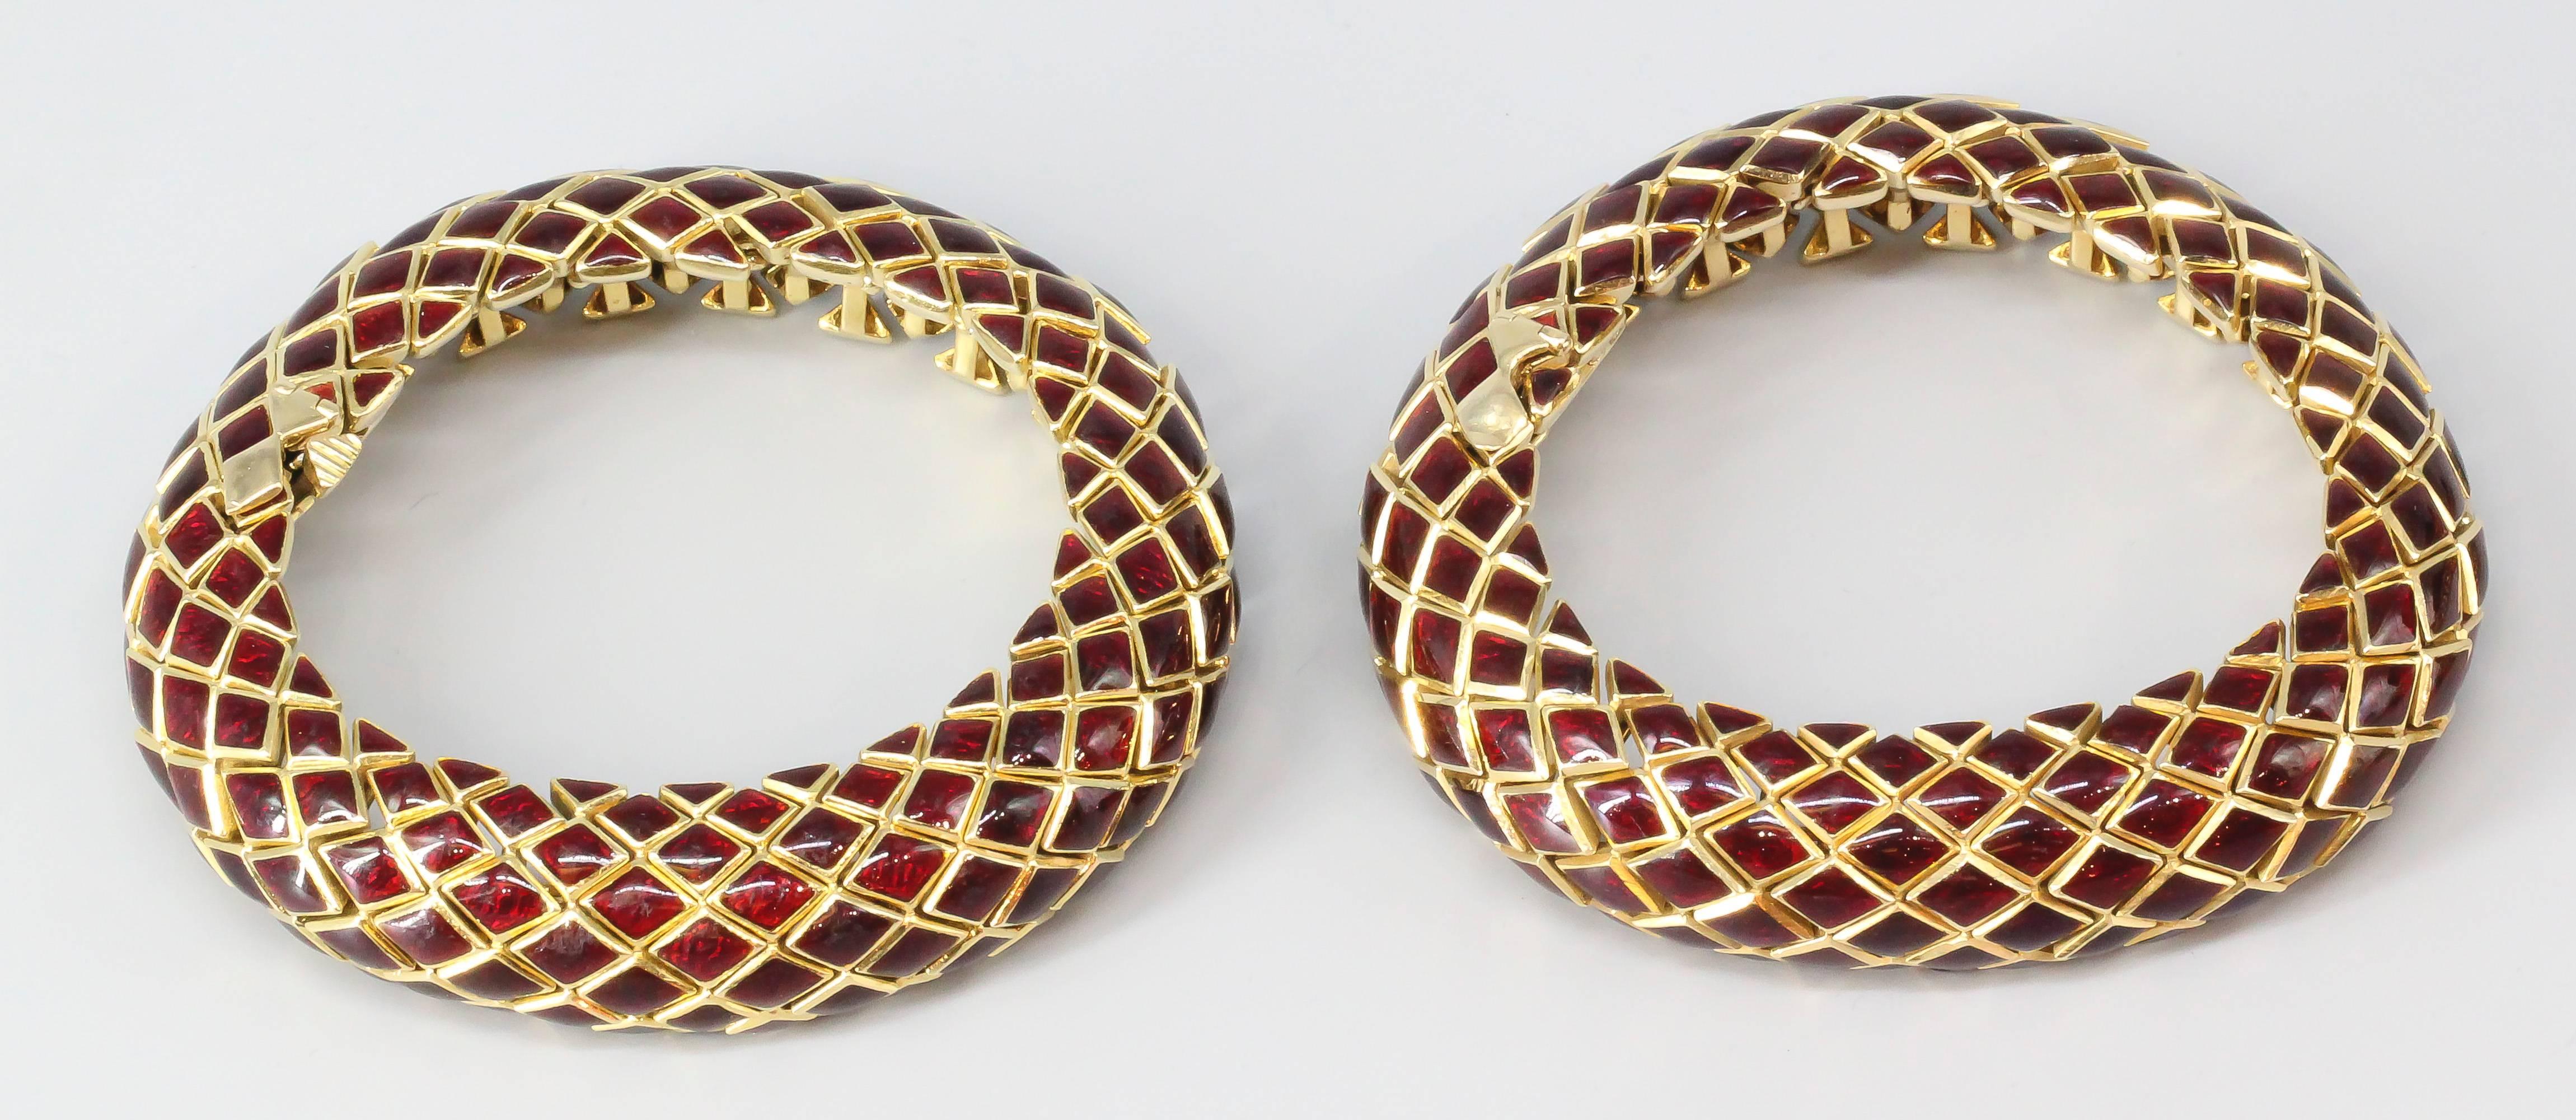 Erleben Sie die Anziehungskraft zeitloser Eleganz mit diesem exquisiten Paar David Webb Gliederarmbänder, einem wahren Zeugnis der ikonischen Handwerkskunst des renommierten Designers. Diese in den 1980er Jahren gefertigten Armbänder zeigen, dass